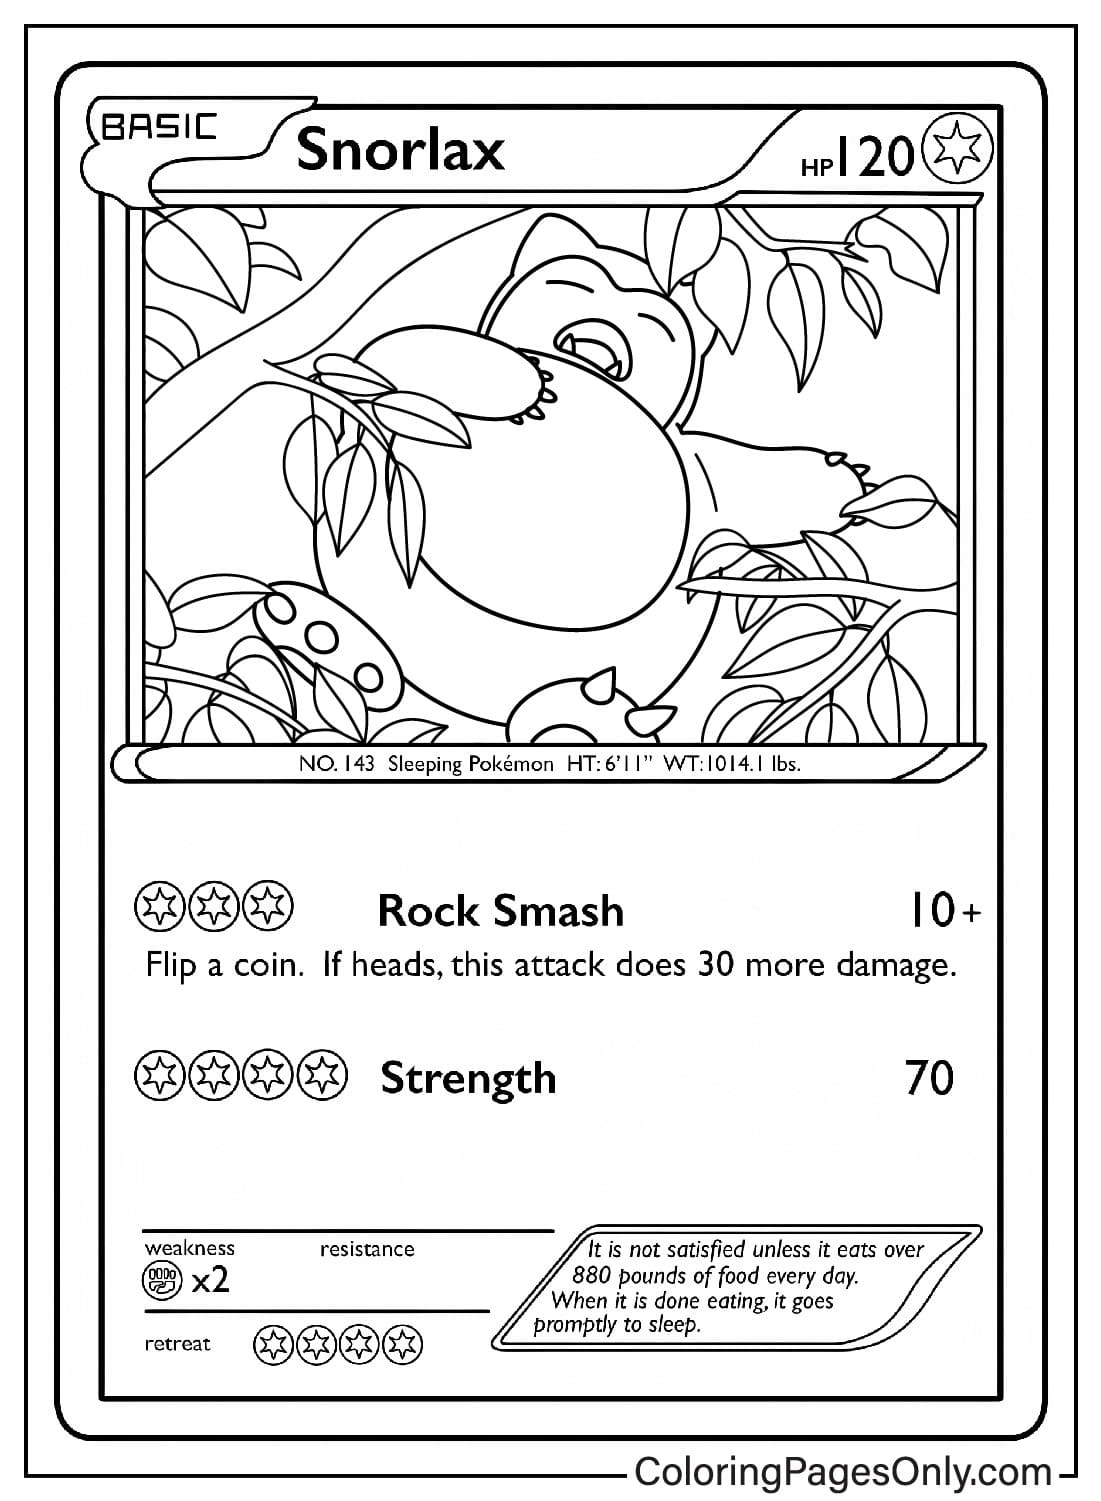 Snorlax Pokemon Card Malseite von Pokemon Card